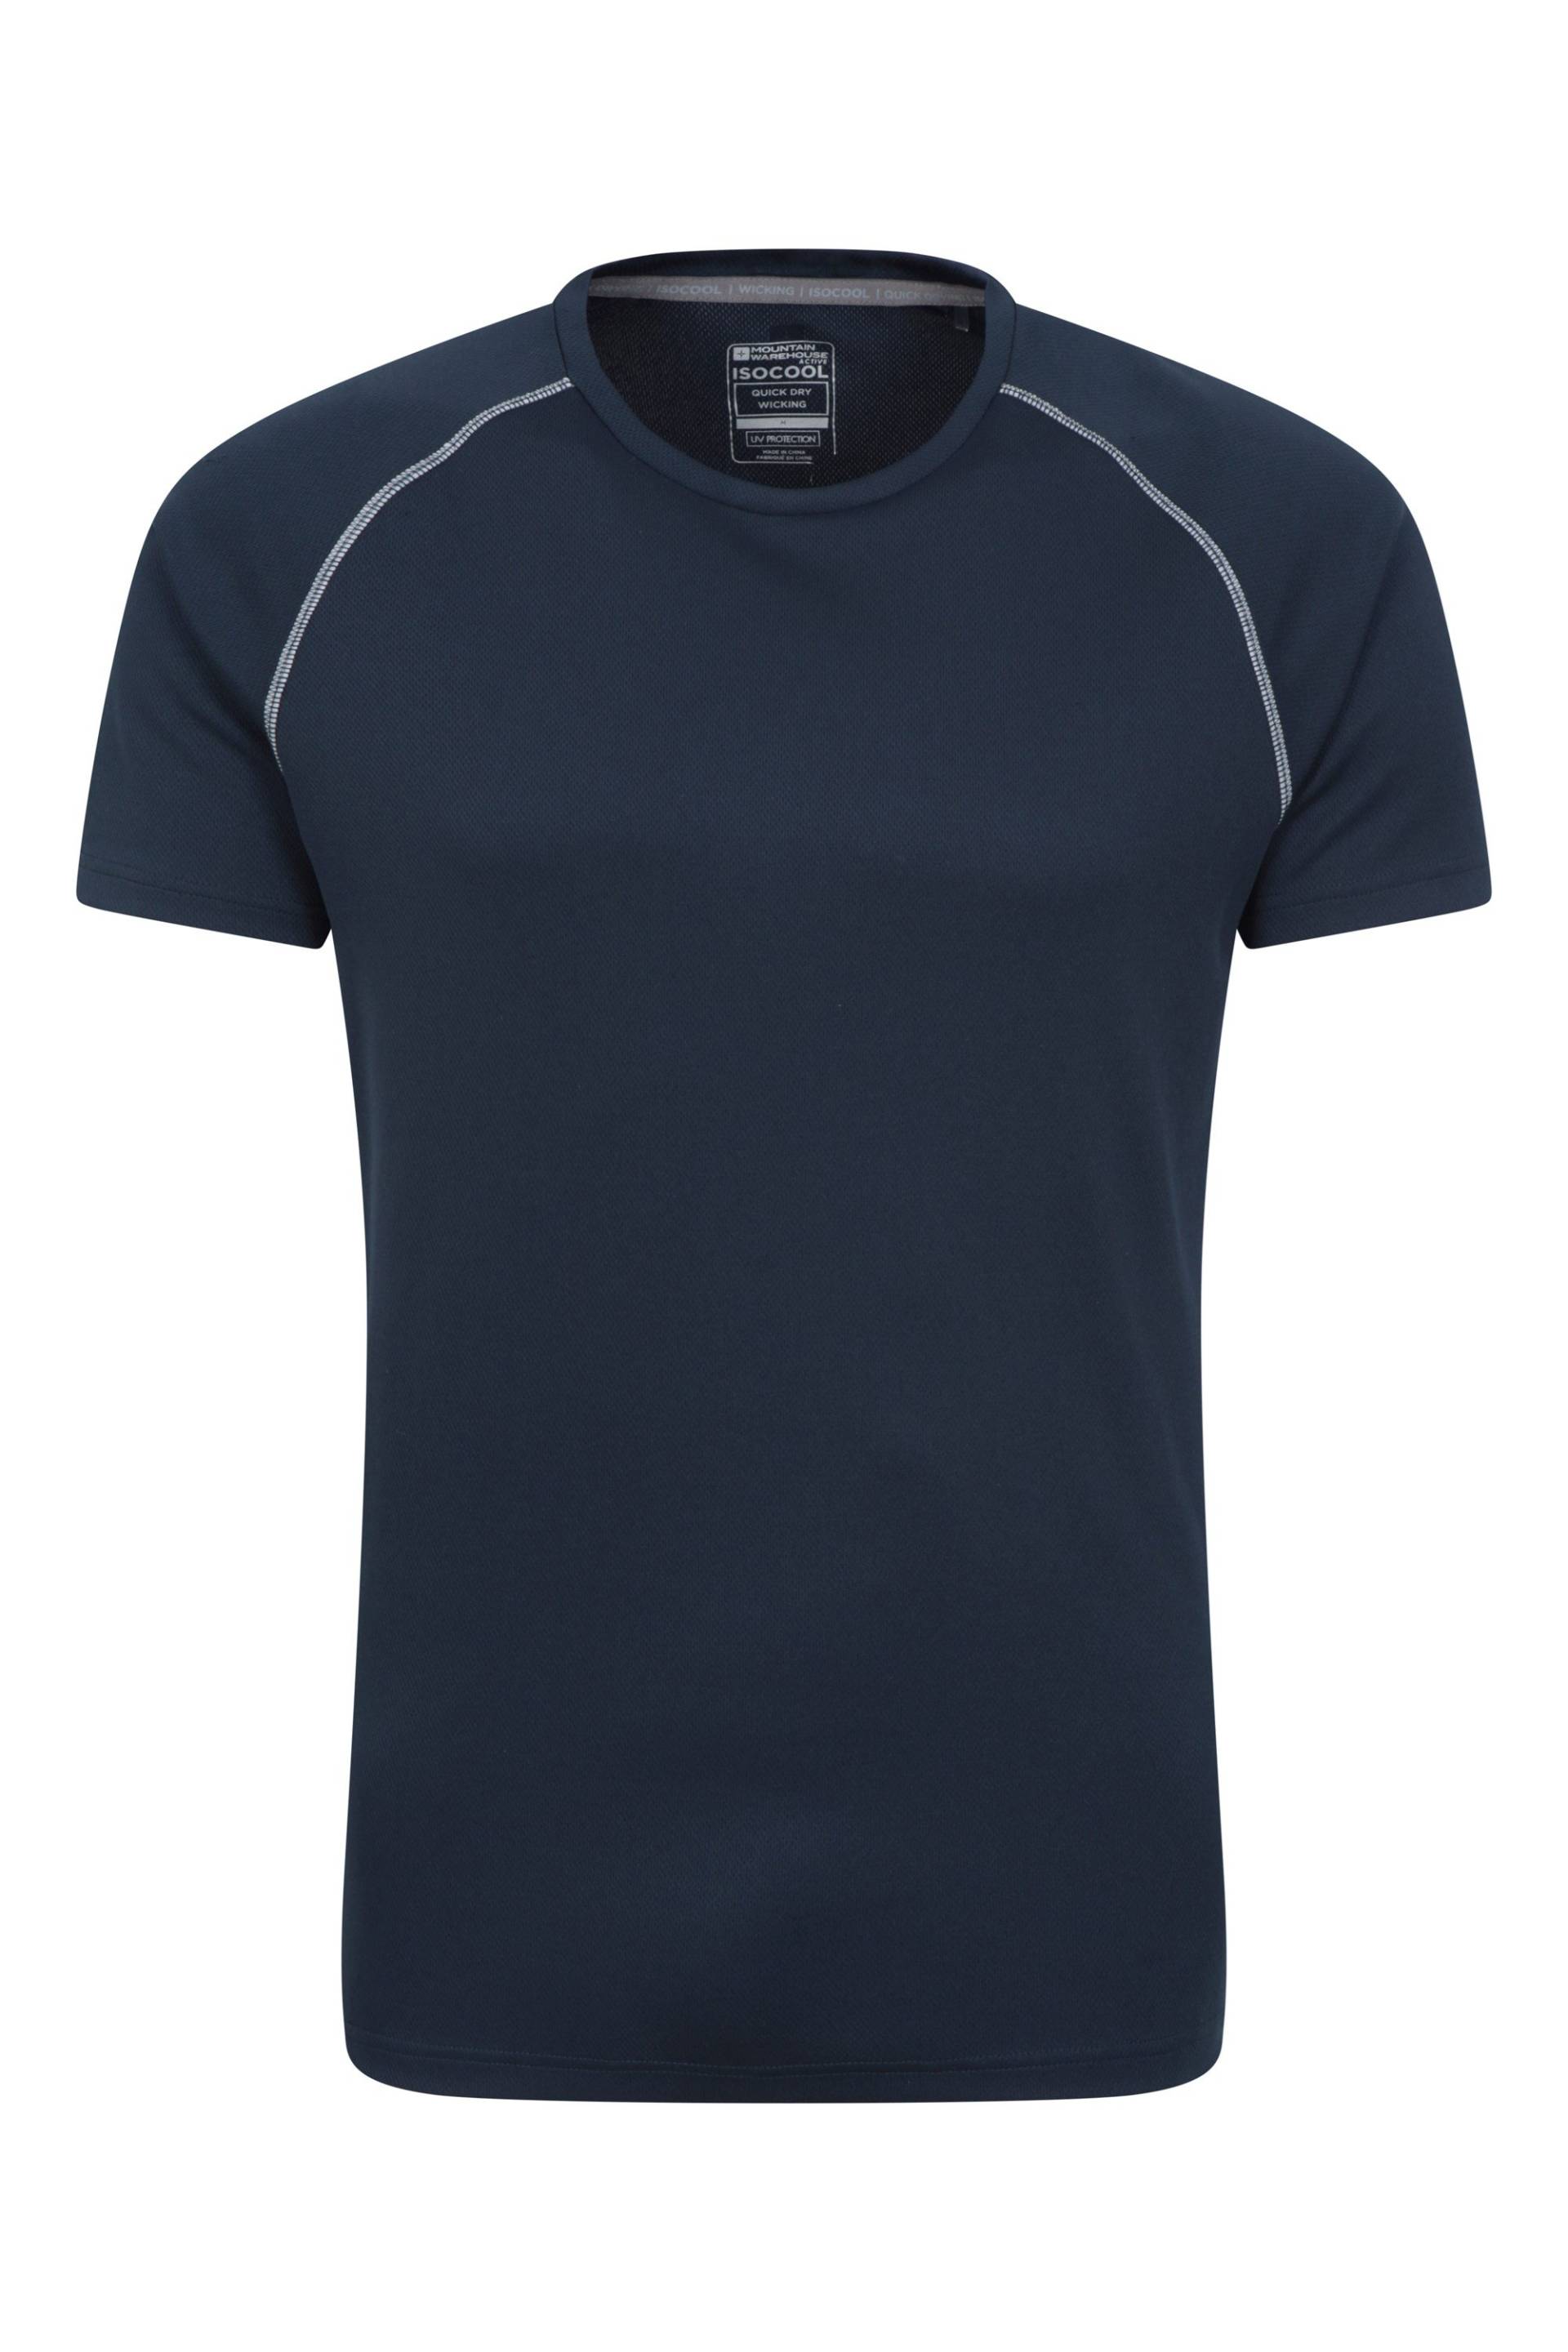 Endurance Herren T-Shirt - Navy von Mountain Warehouse